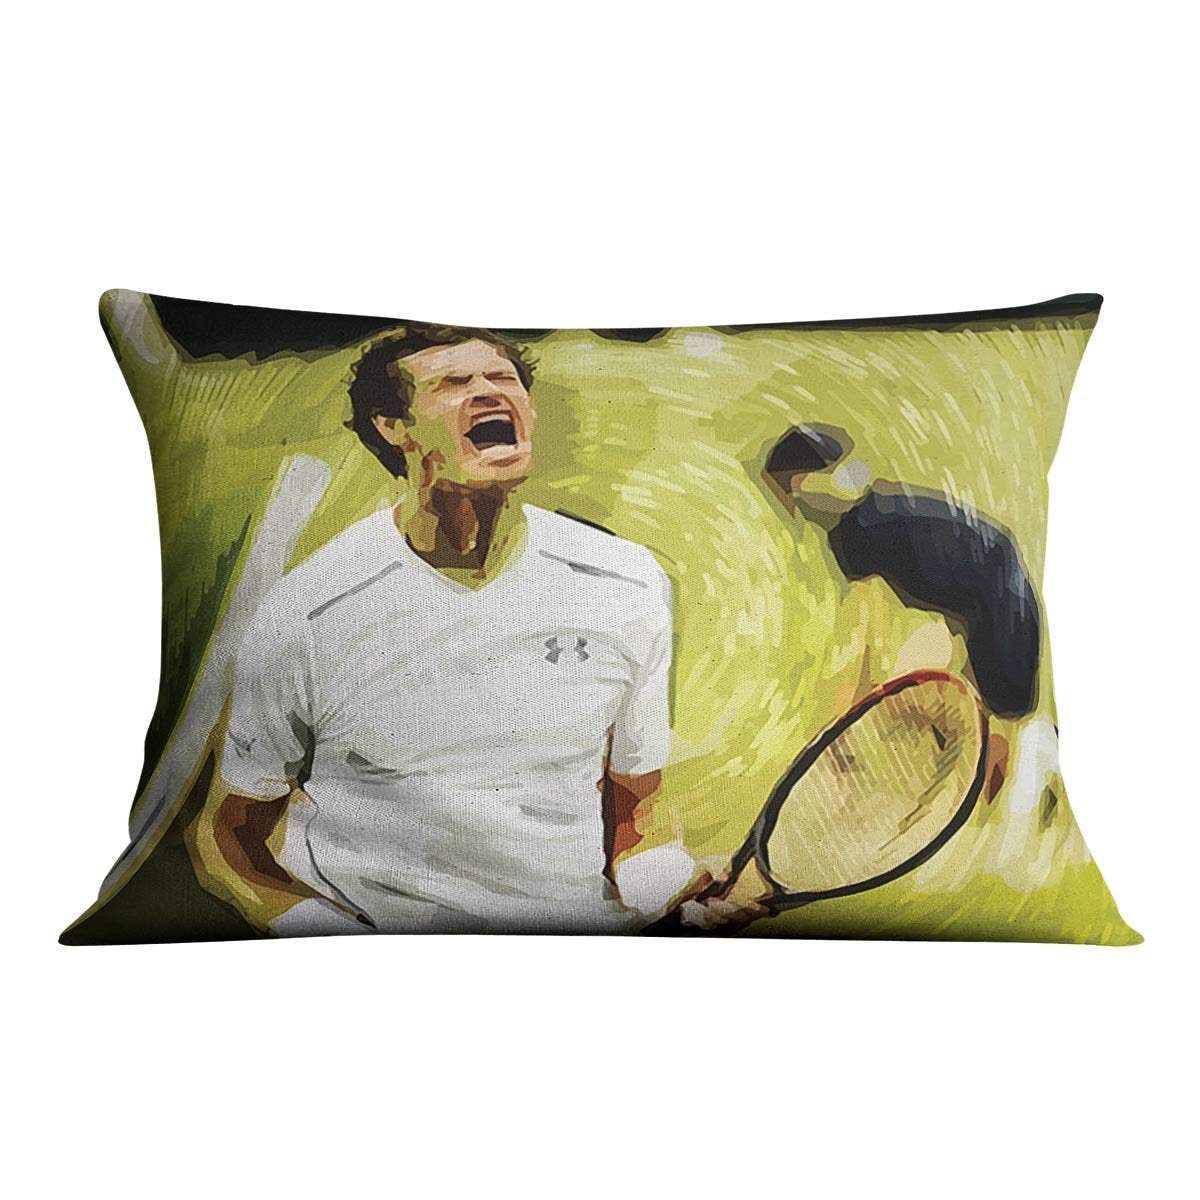 Andy Murray Wimbledon Cushion